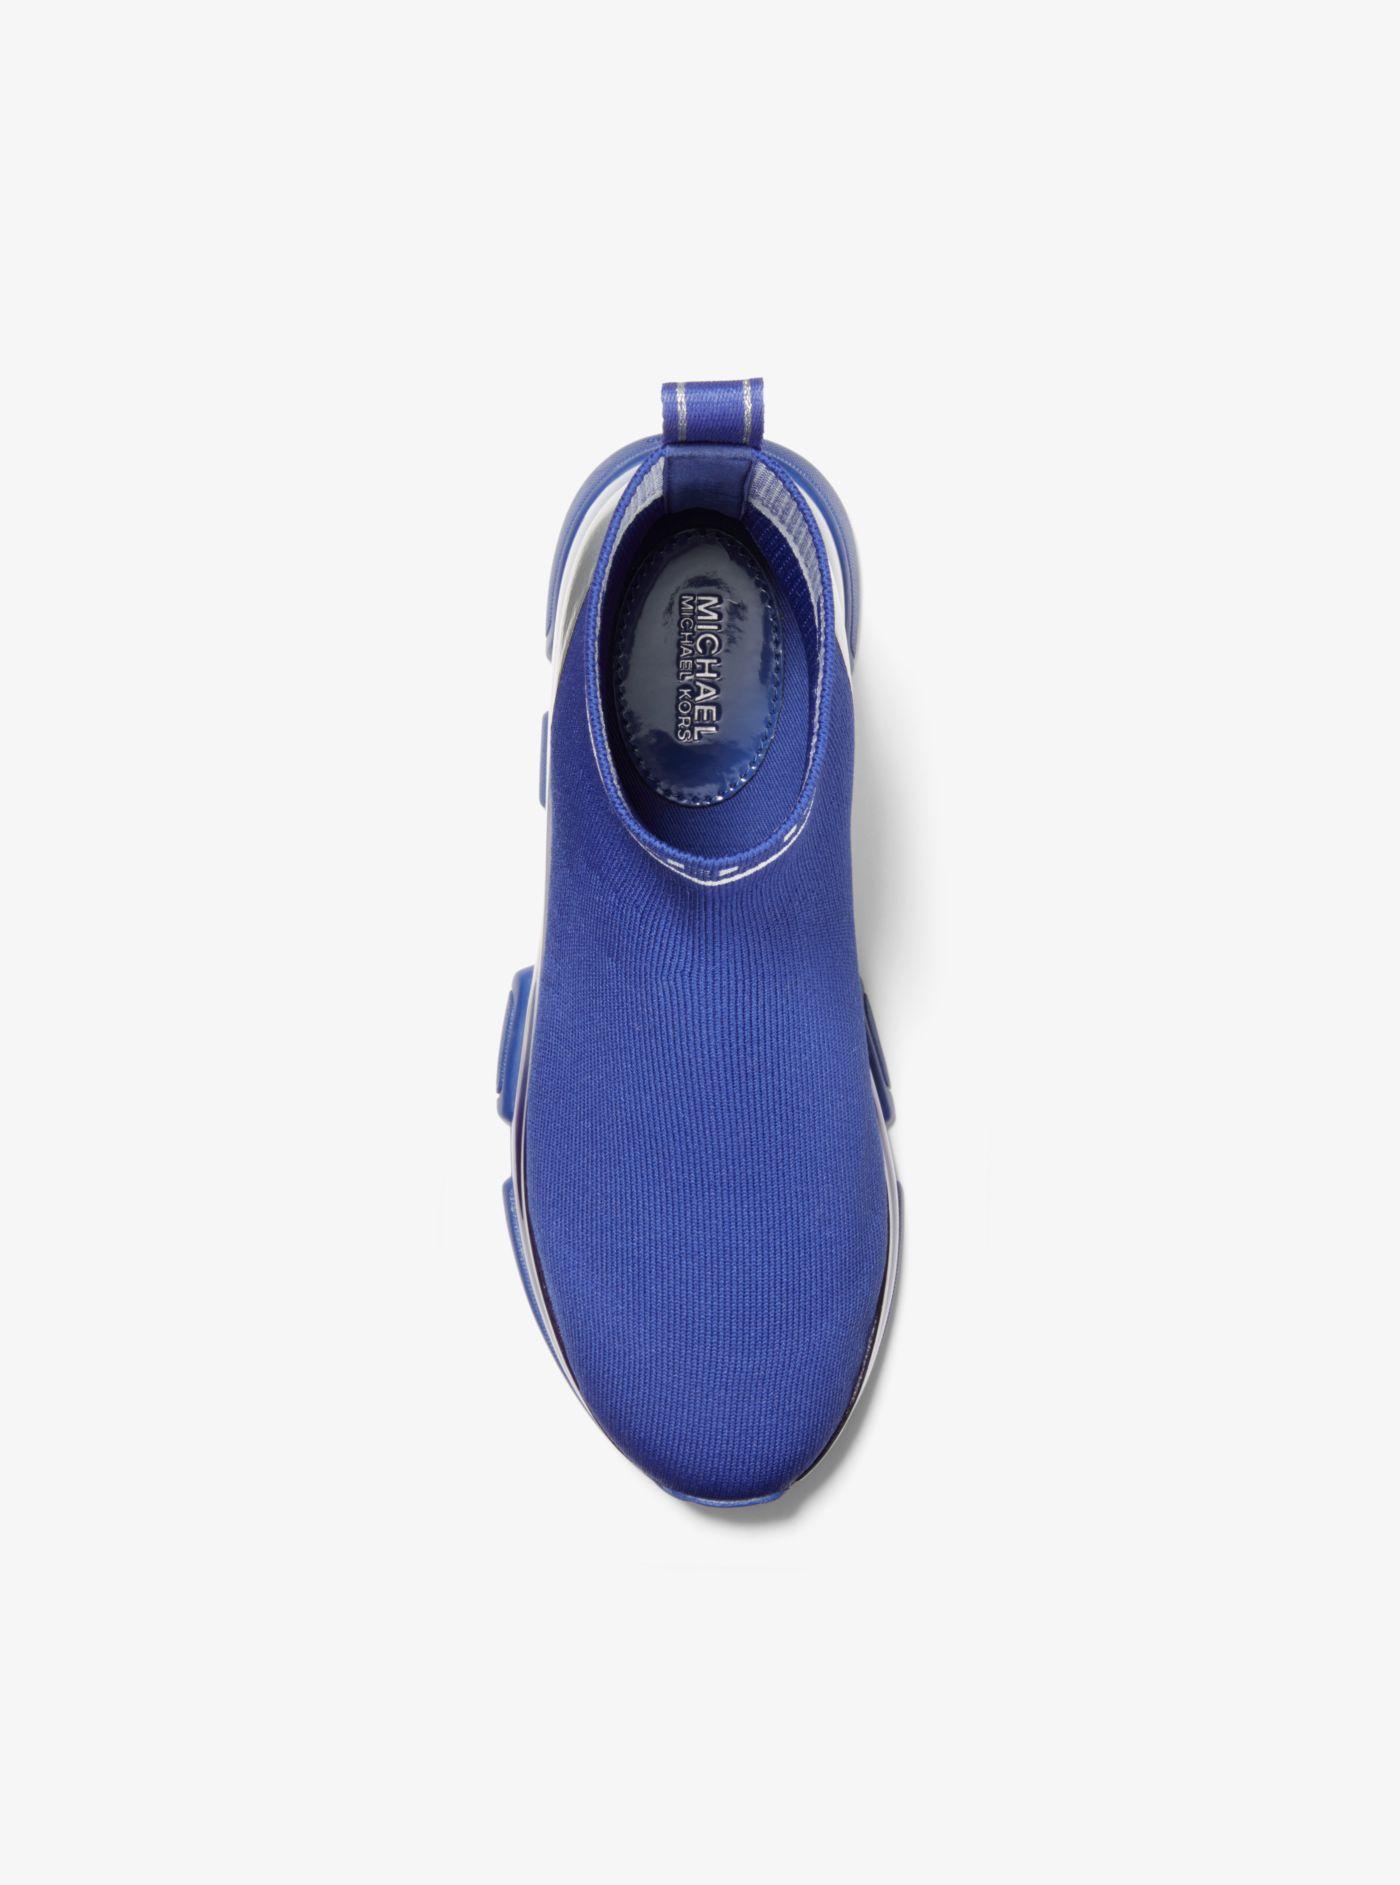 Michael Kors Kendra Reflective Stretch Knit Sock Sneaker in Blue | Lyst